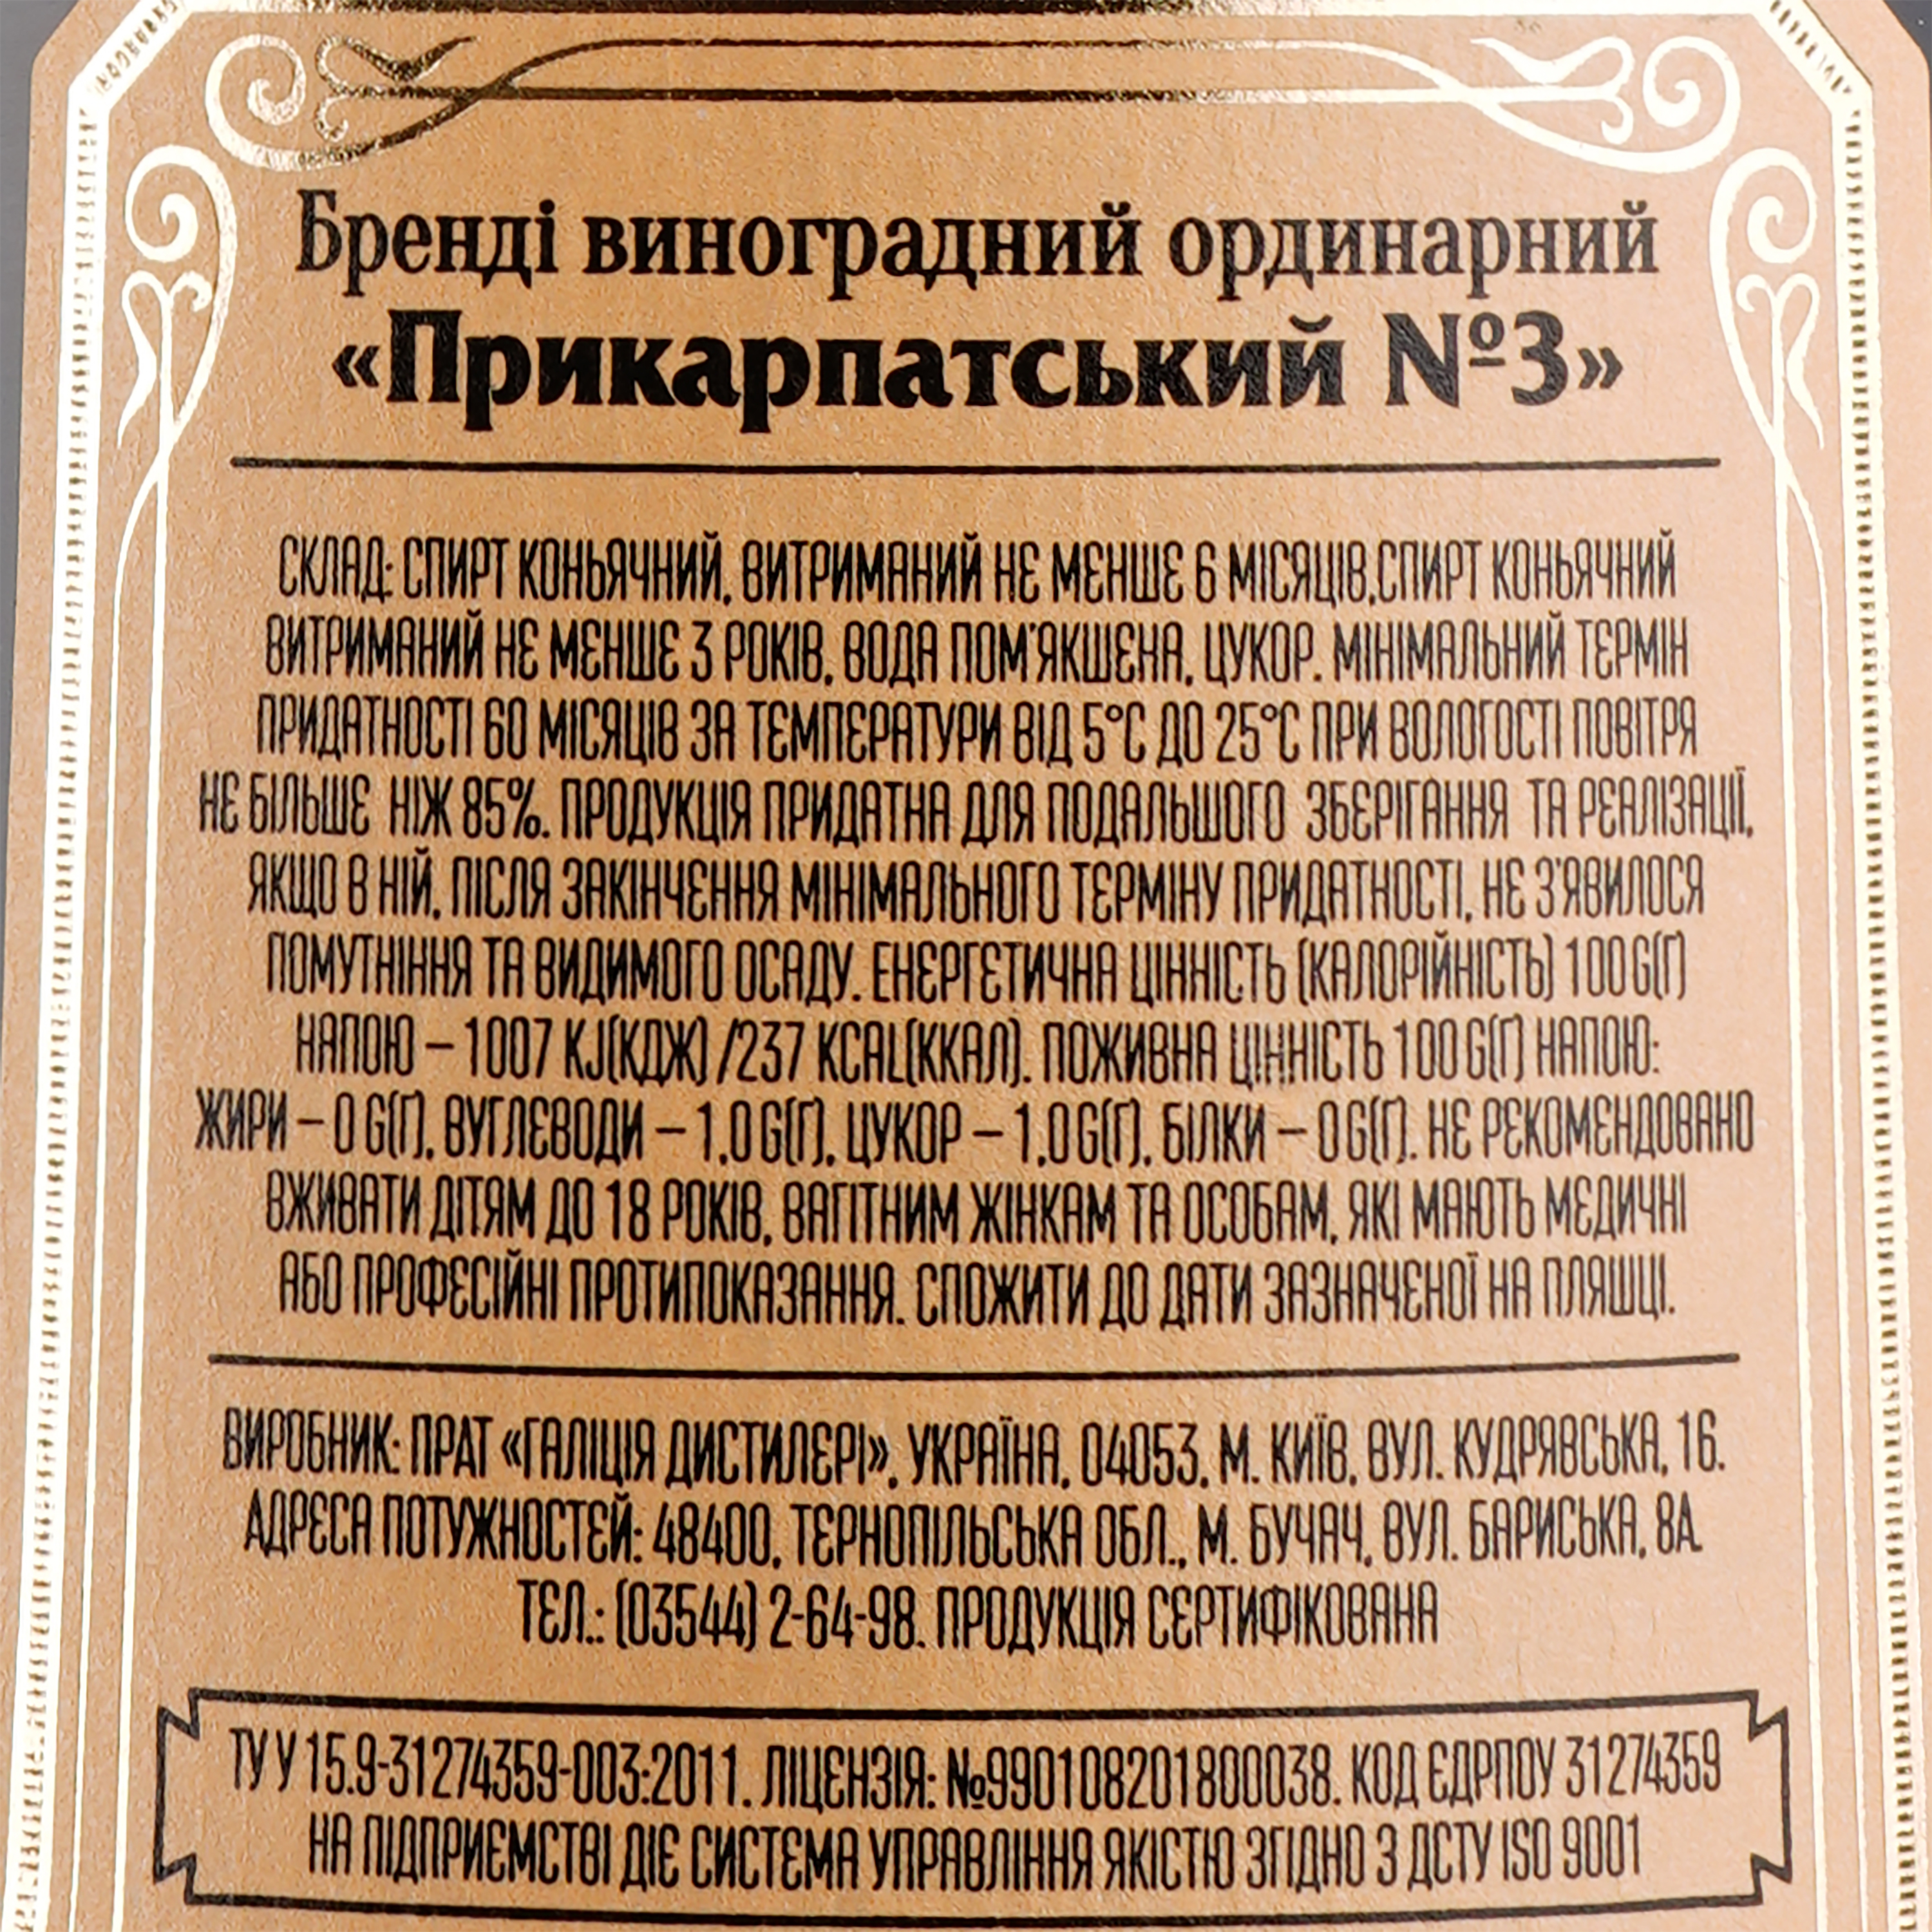 Бренді Прикарпатський №3 виноградний ординарний 40% 0,5 л - фото 3